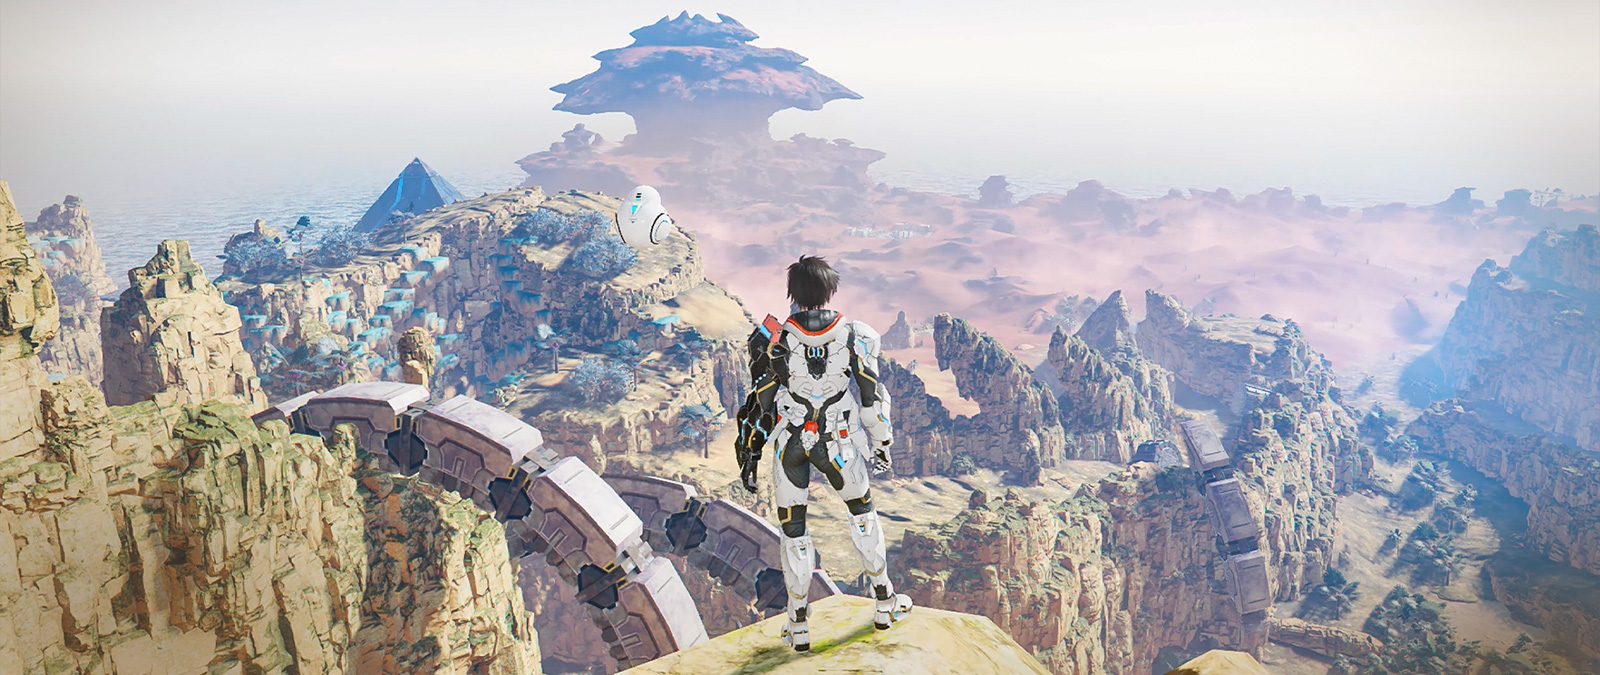 Uma personagem com uma armadura está no topo de um penhasco com vista para um vale.